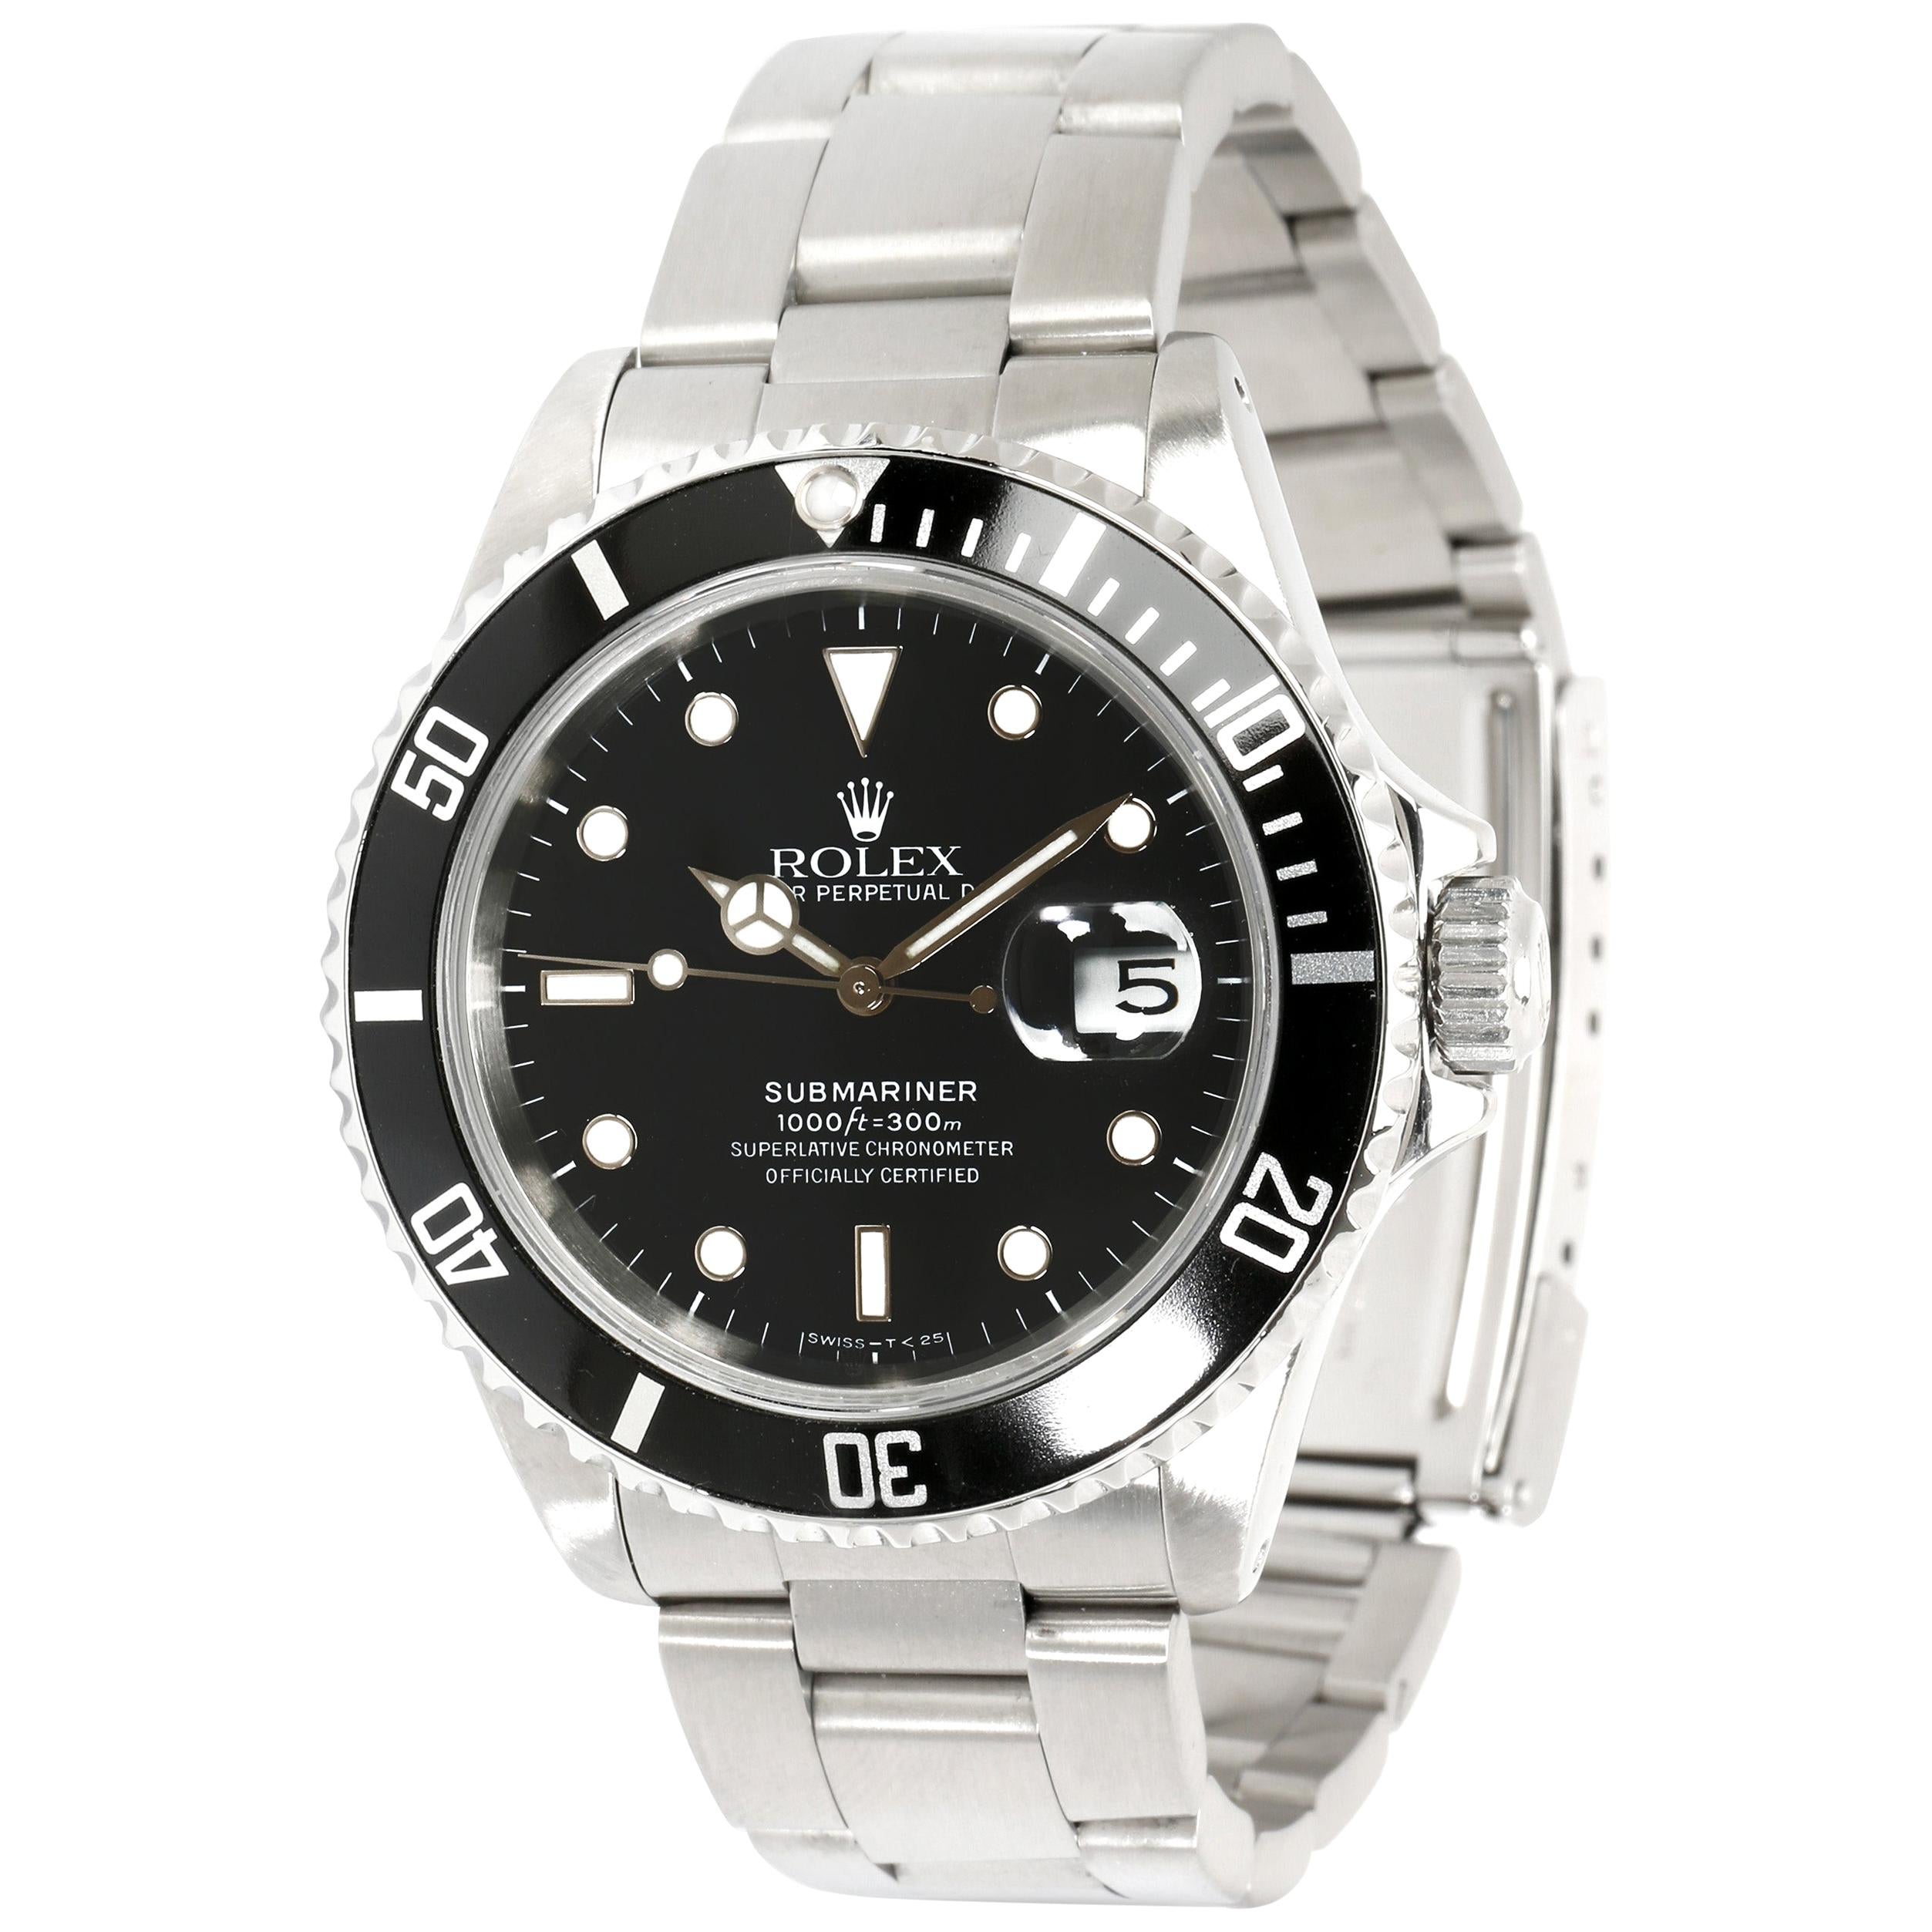 Rolex Submariner 16610 Men's Watch in Stainless Steel